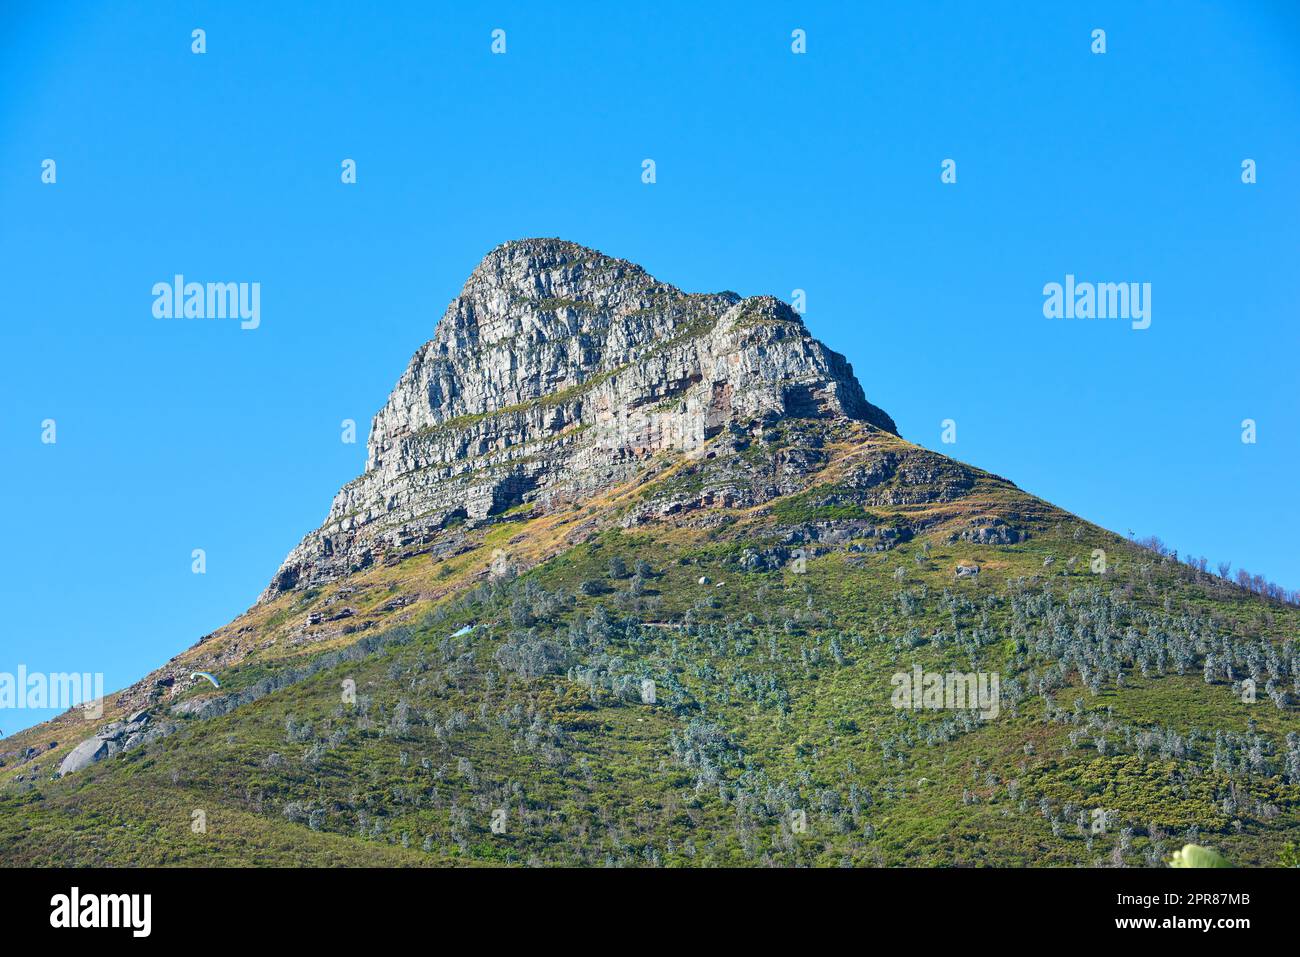 La montagne de Lions Head avec un ciel bleu et un espace de copie. Belle vue en contrebas d'un pic rocheux couvert de beaucoup de végétation verte luxuriante dans une destination touristique populaire à Cape Town, Afrique du Sud Banque D'Images